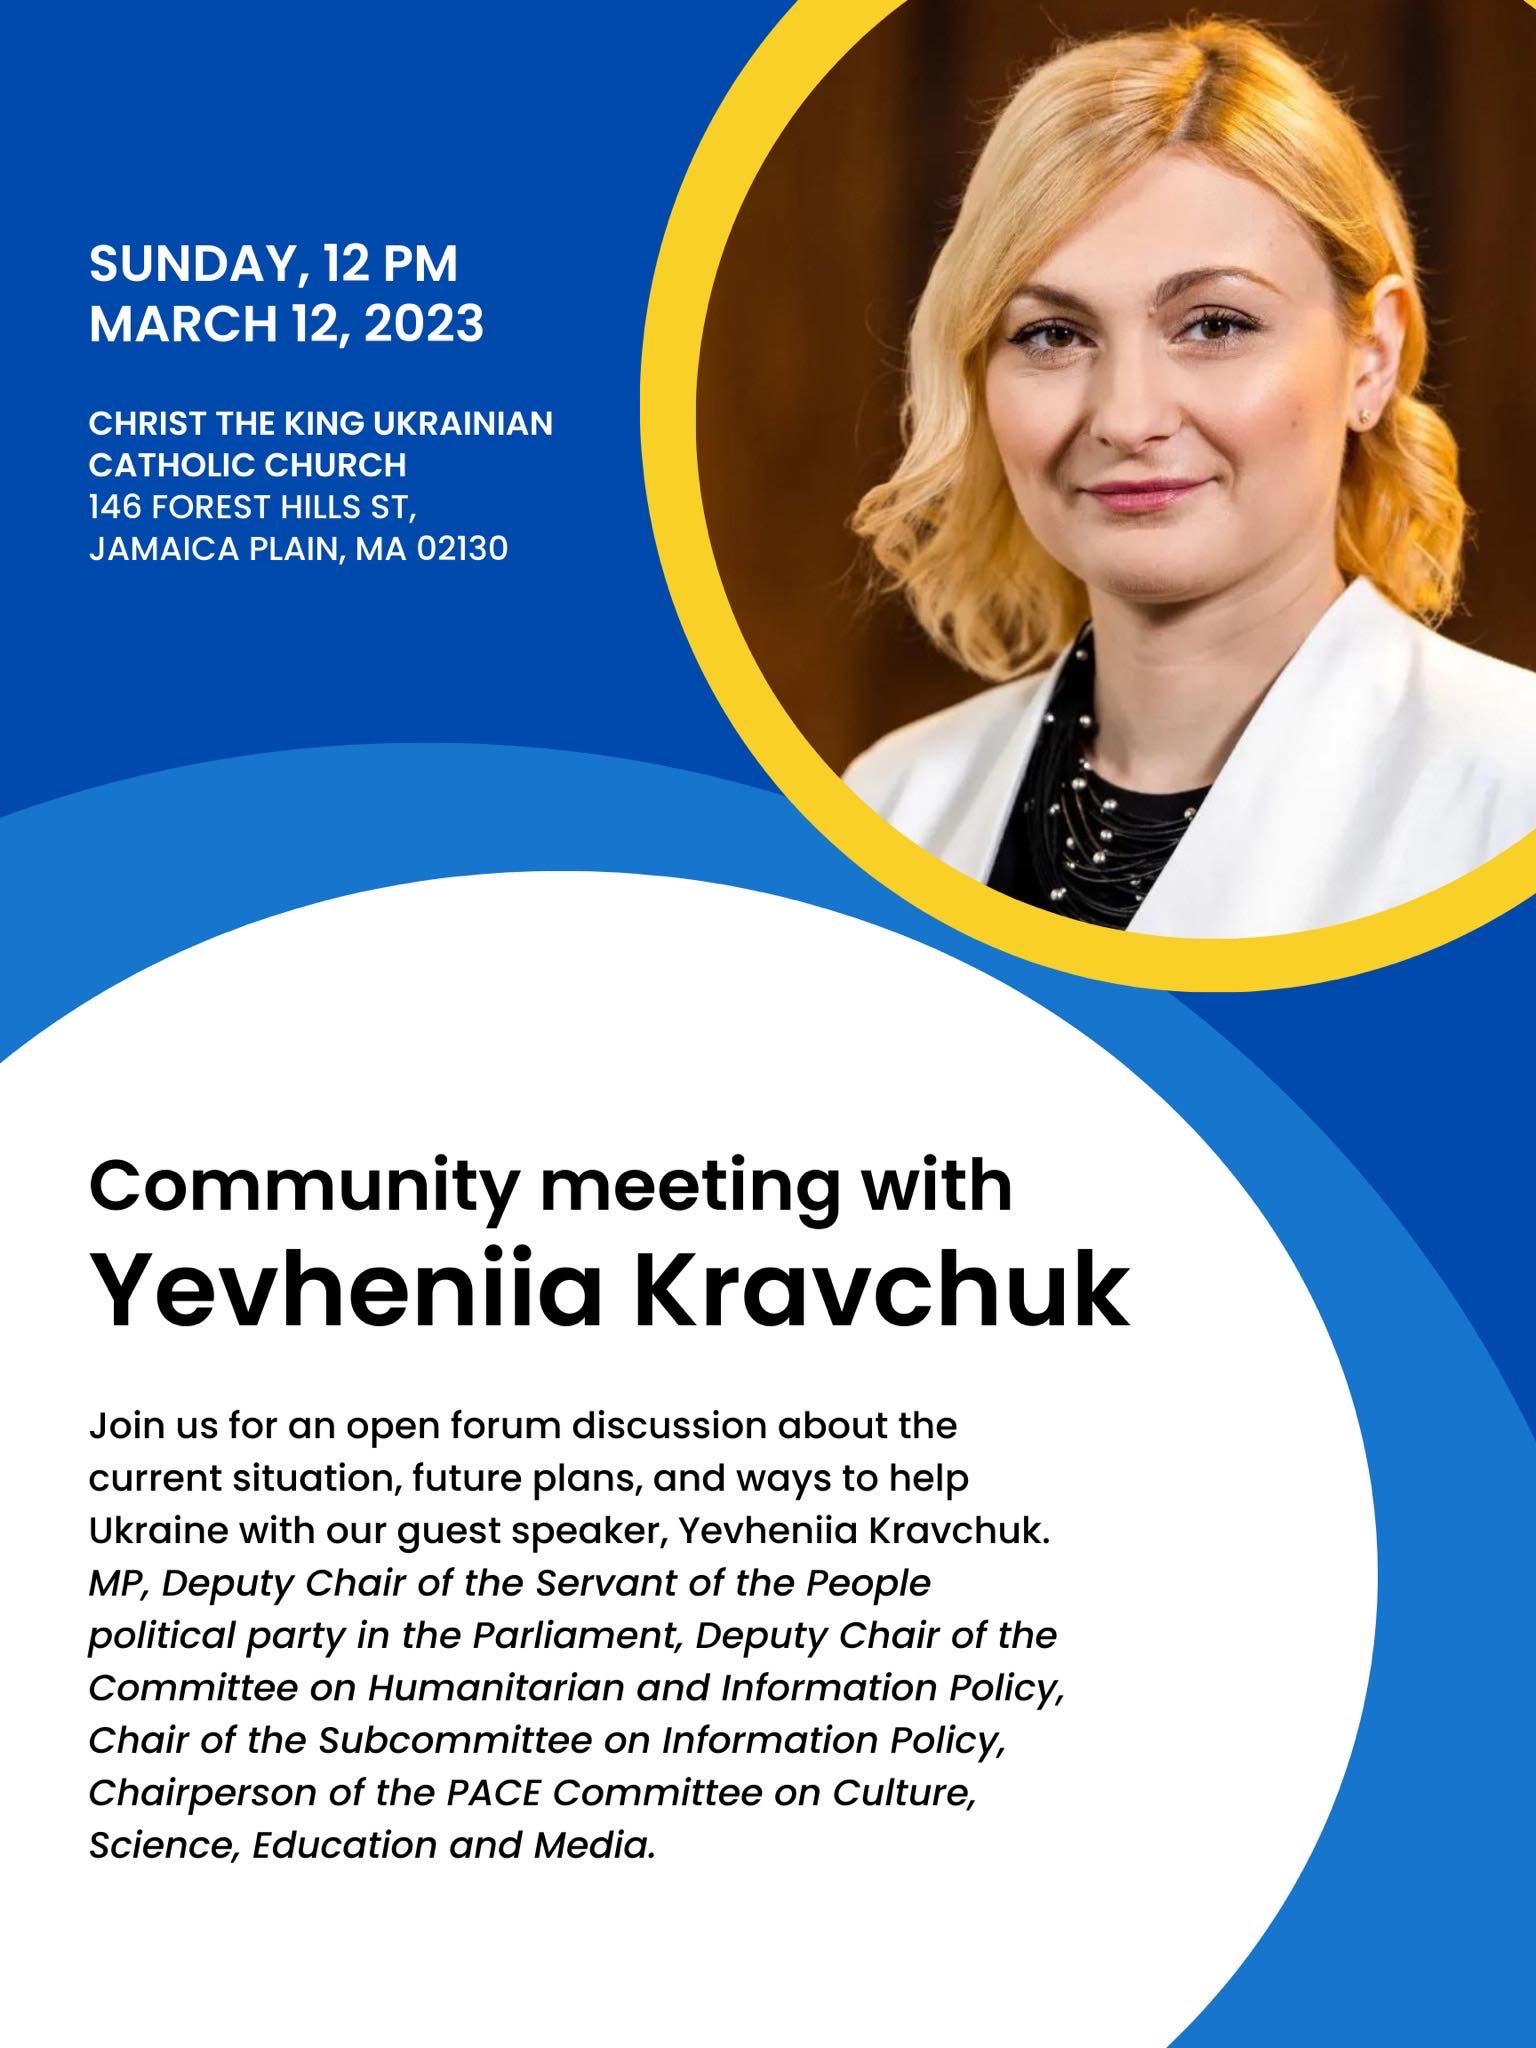 Community Meeting with Yevheniia Kravchuk, Member of Ukrainian Parliament